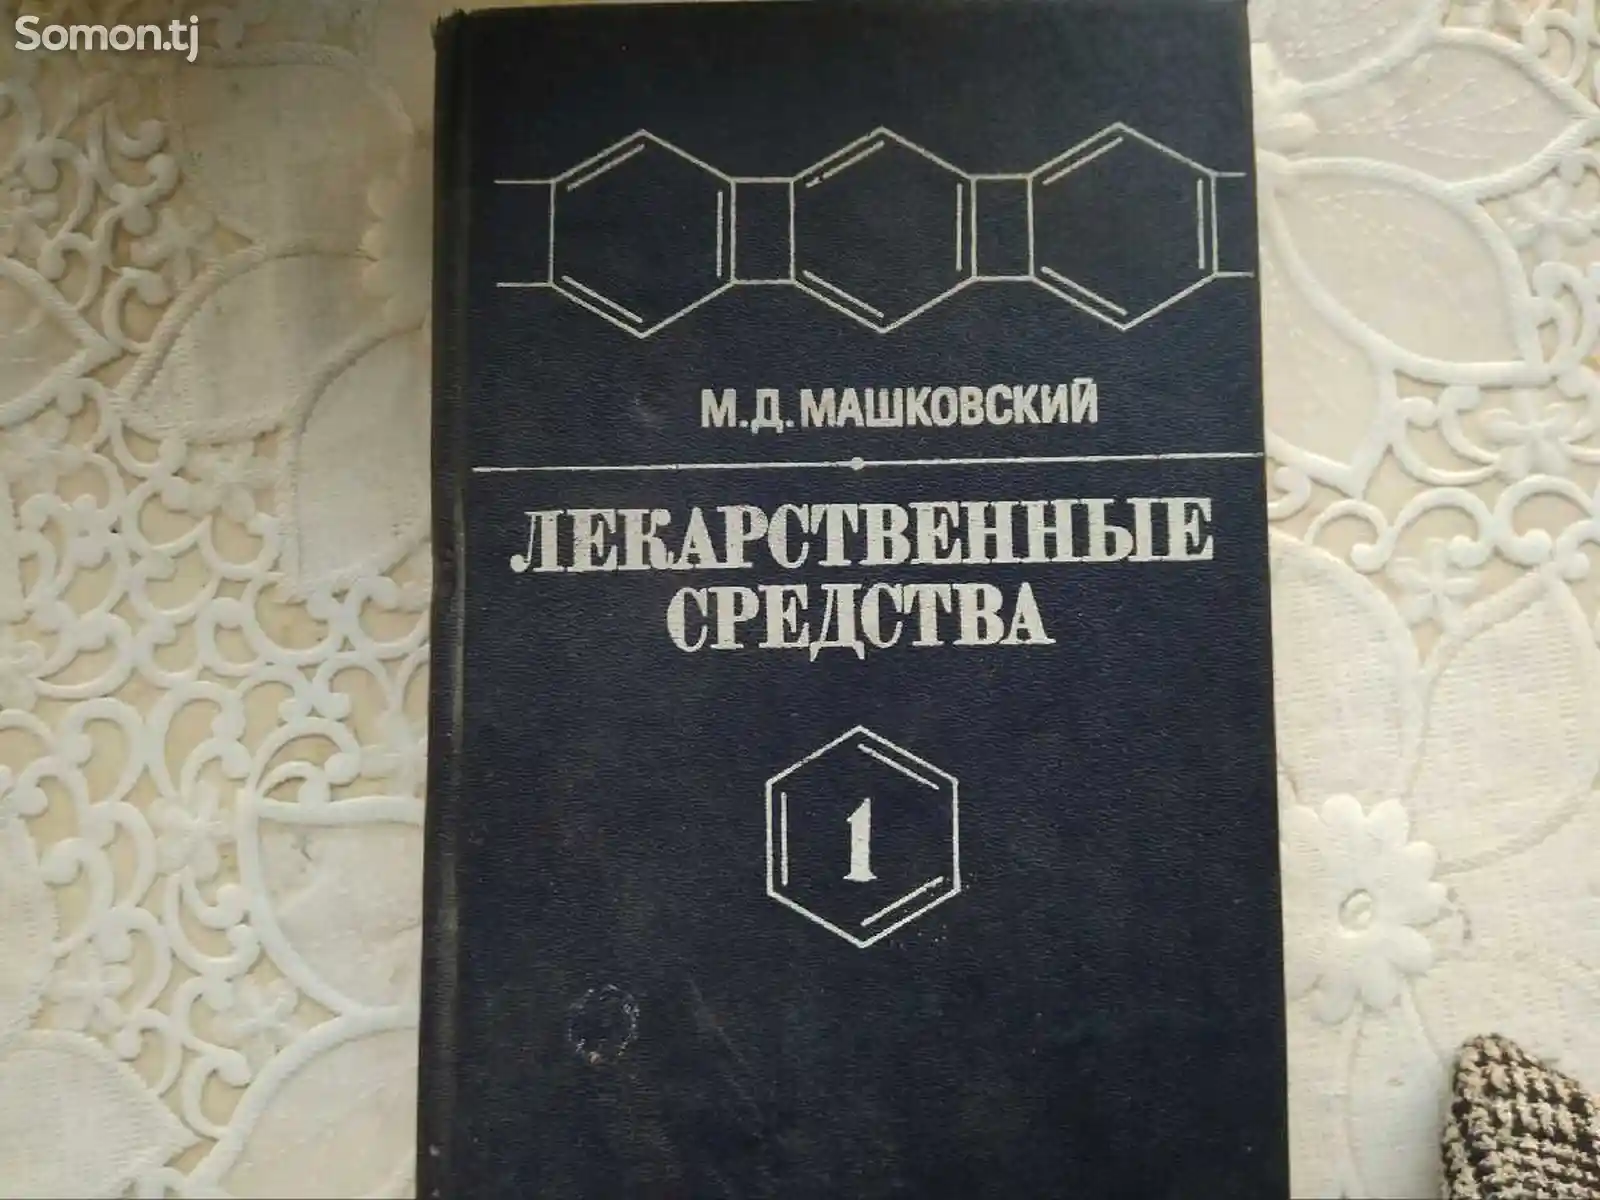 Книга - лекарственные средства